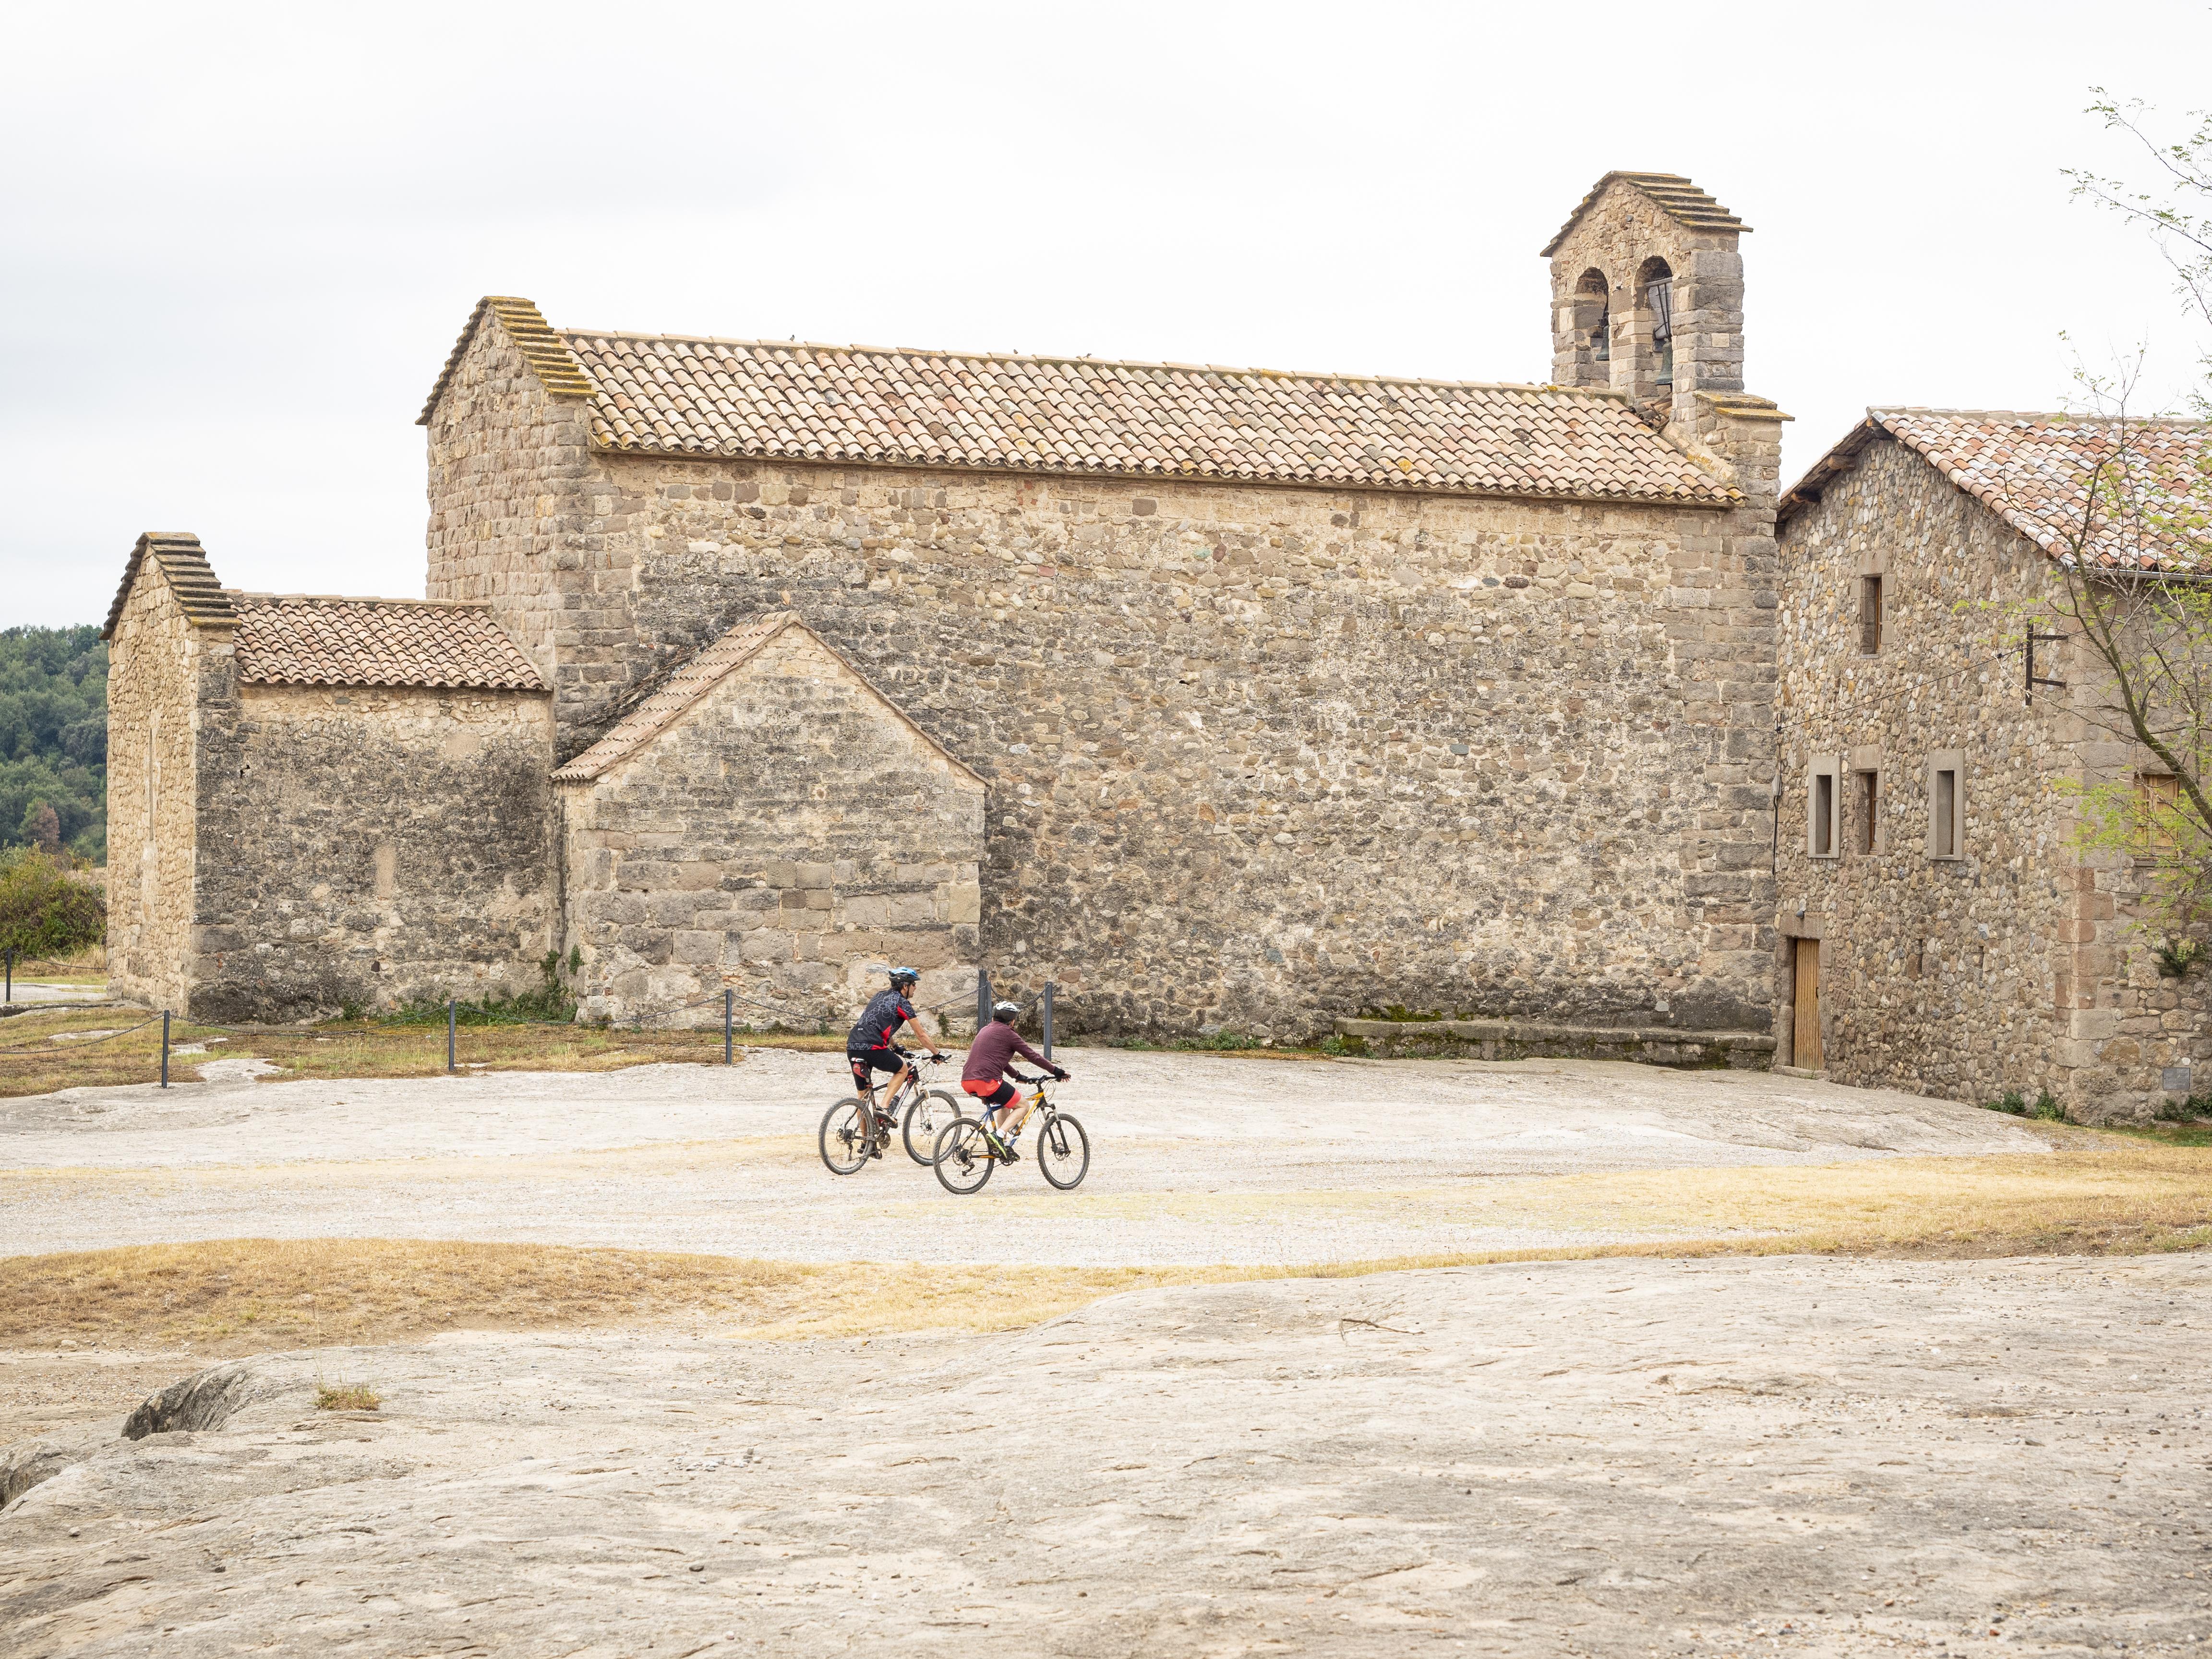 Sant Vicenç d'Obiols és un lloc agradable per anar hi tot fent esport, ja sigui corrent o amb bicicleta. FOTO: Anna E. Puig